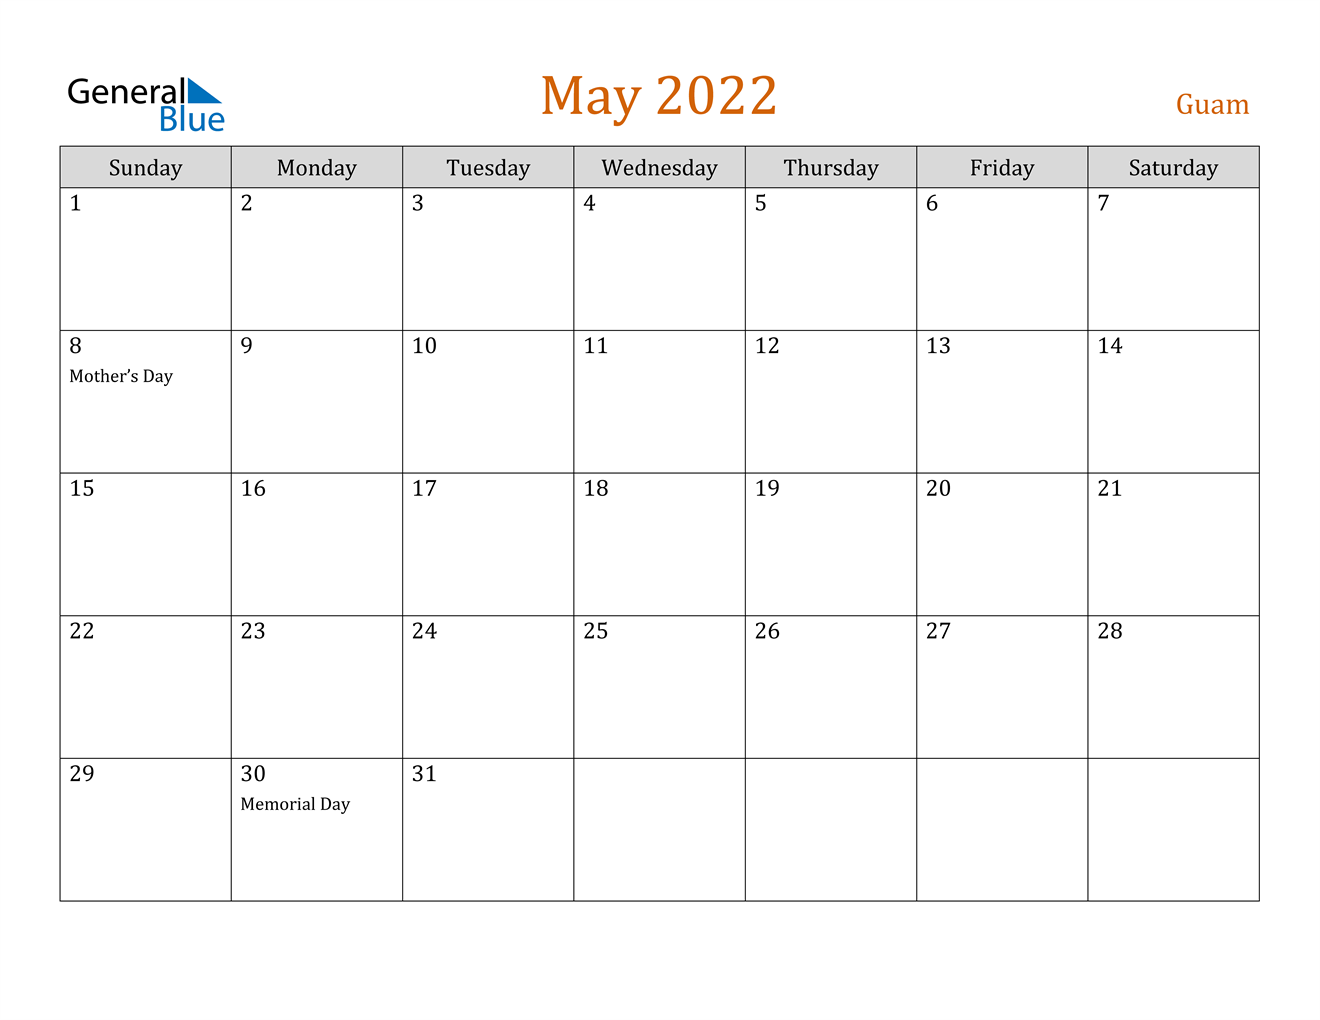 May 2022 Calendar - Guam